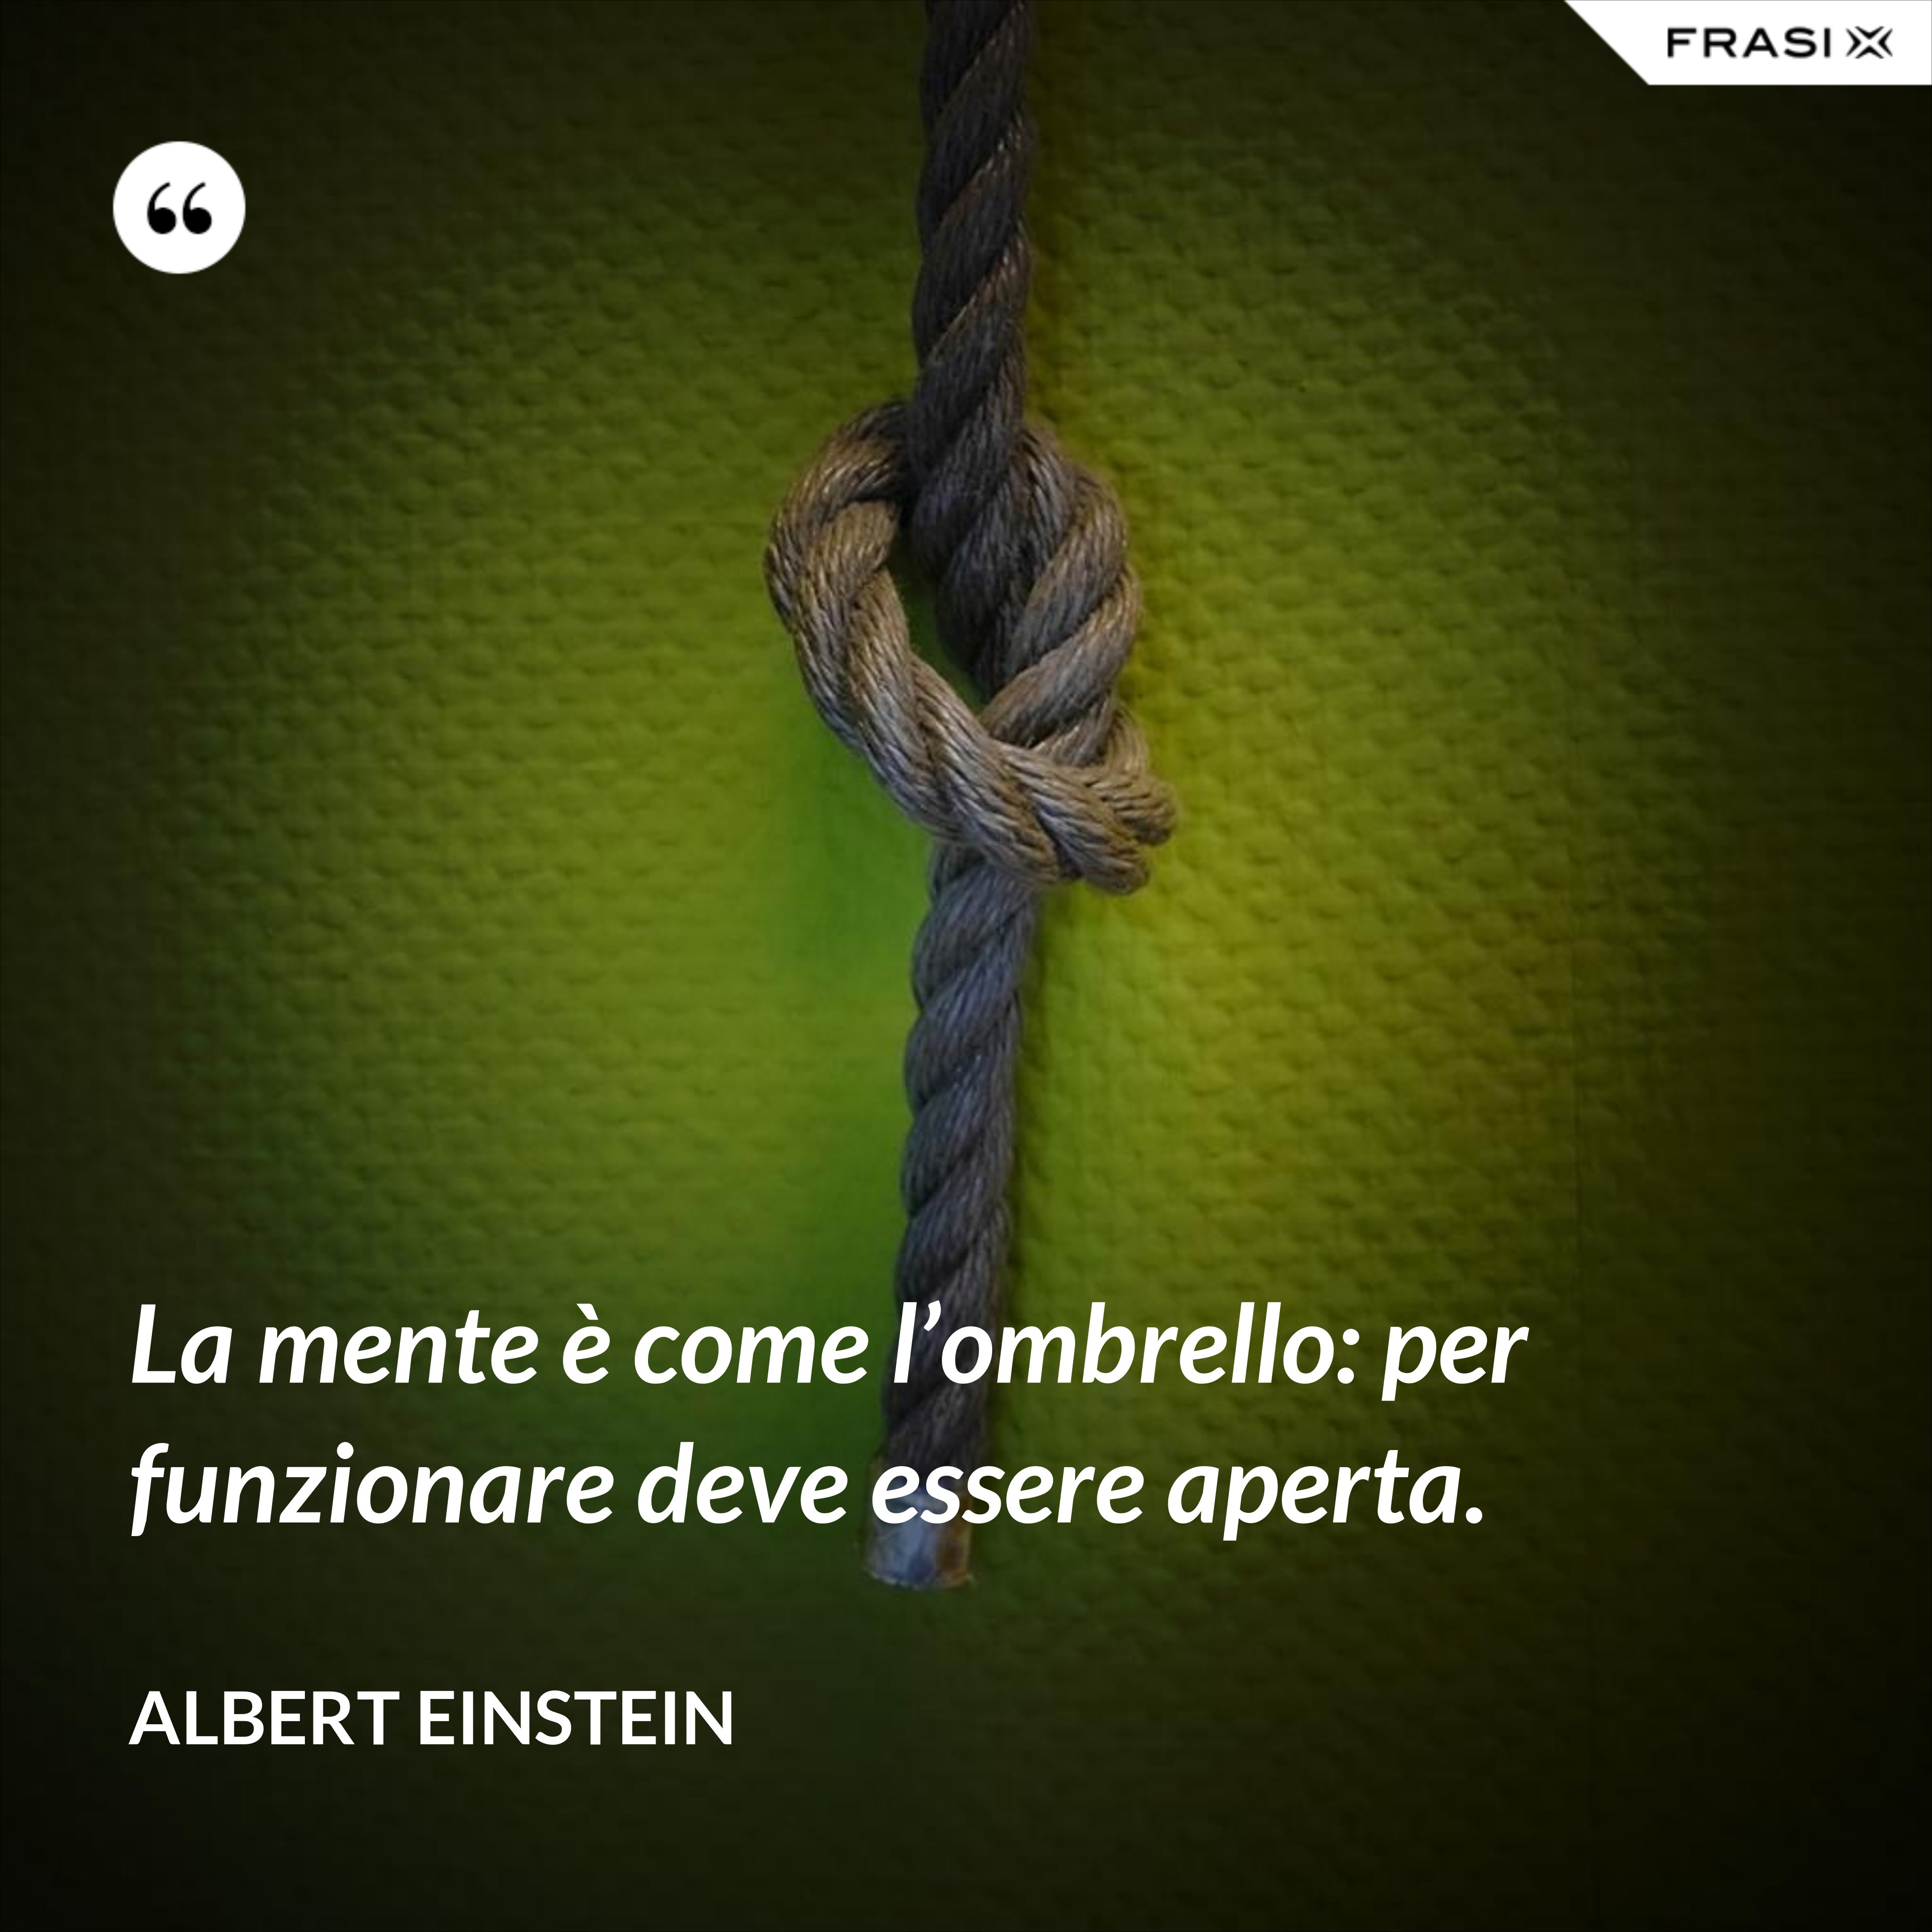 La mente è come l’ombrello: per funzionare deve essere aperta. - Albert Einstein